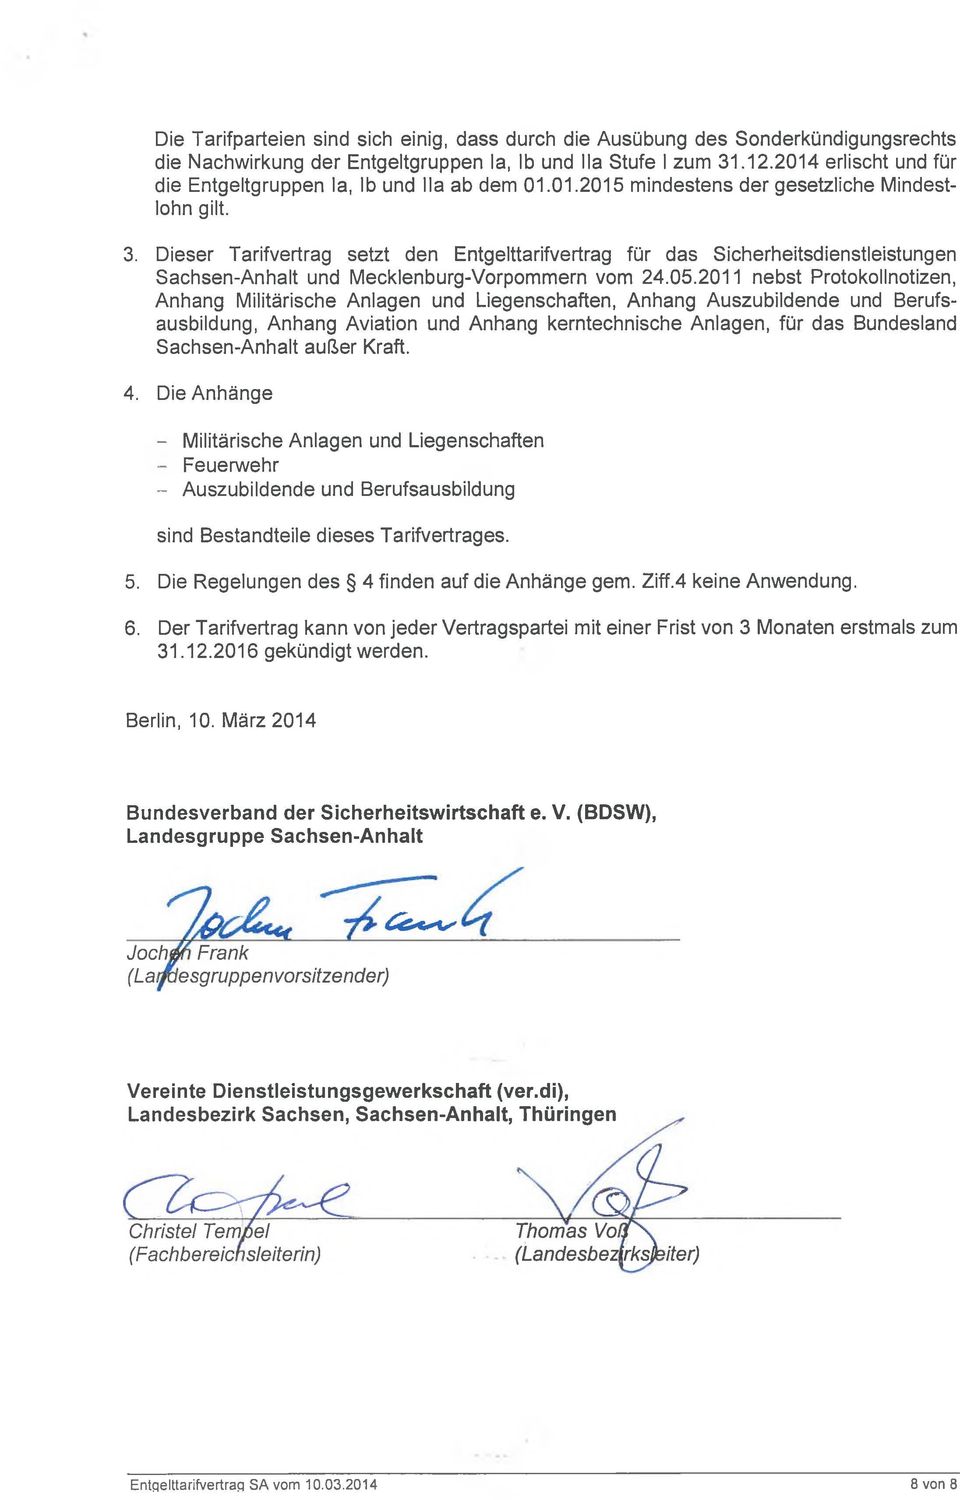 Dieser Tarifvertrag setzt den Entgelttarifvertrag für das Sicherheitsdienstleistungen Sachsen-Anhalt und Mecklenburg-Vorpommern vom 24.05.